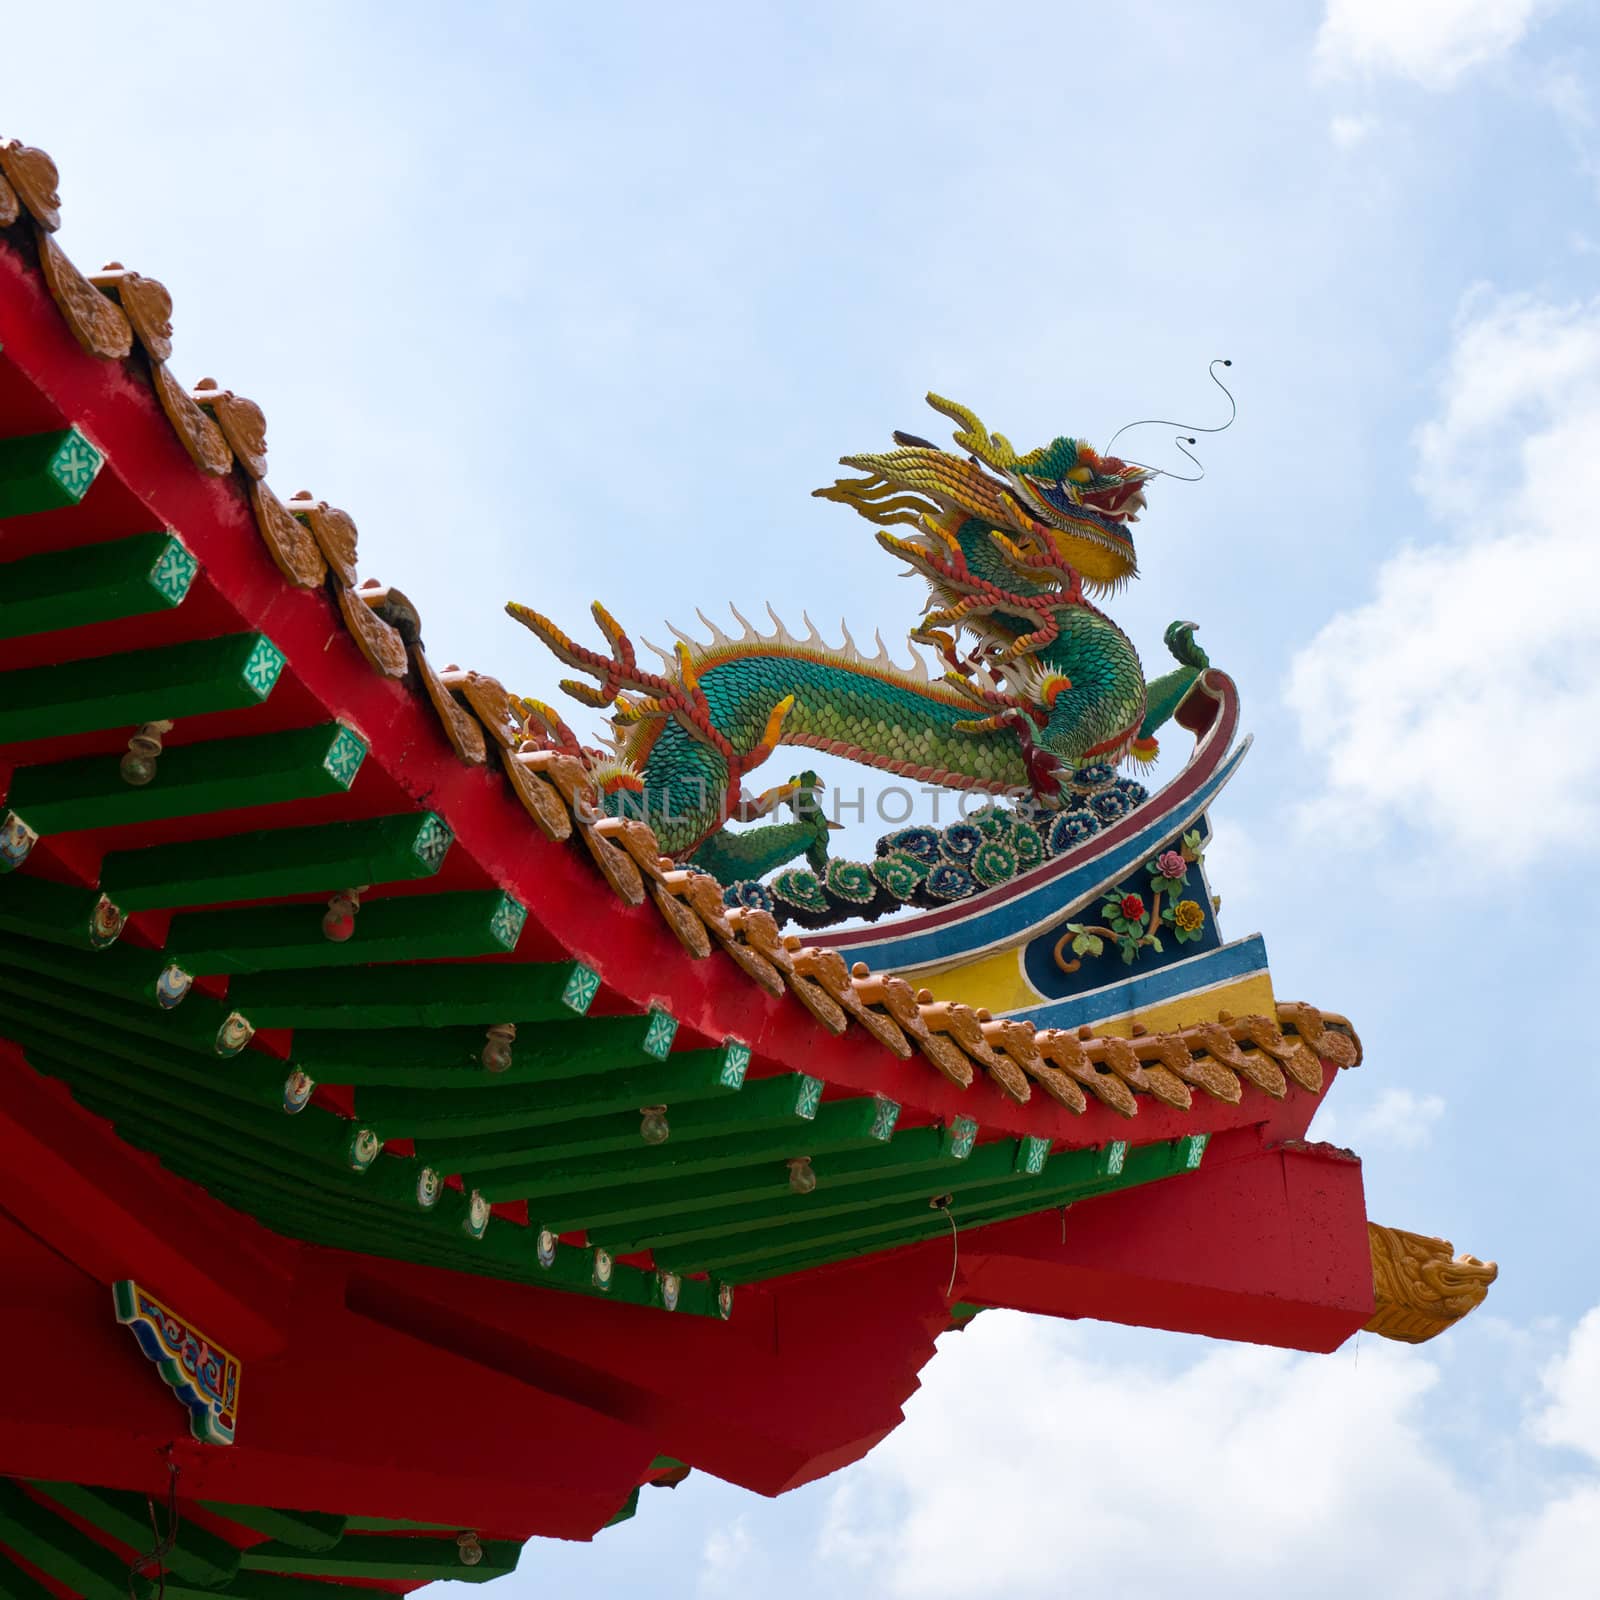 Chinese dragon on the roof of pagoda in Kuala Lumpur, Malaysia